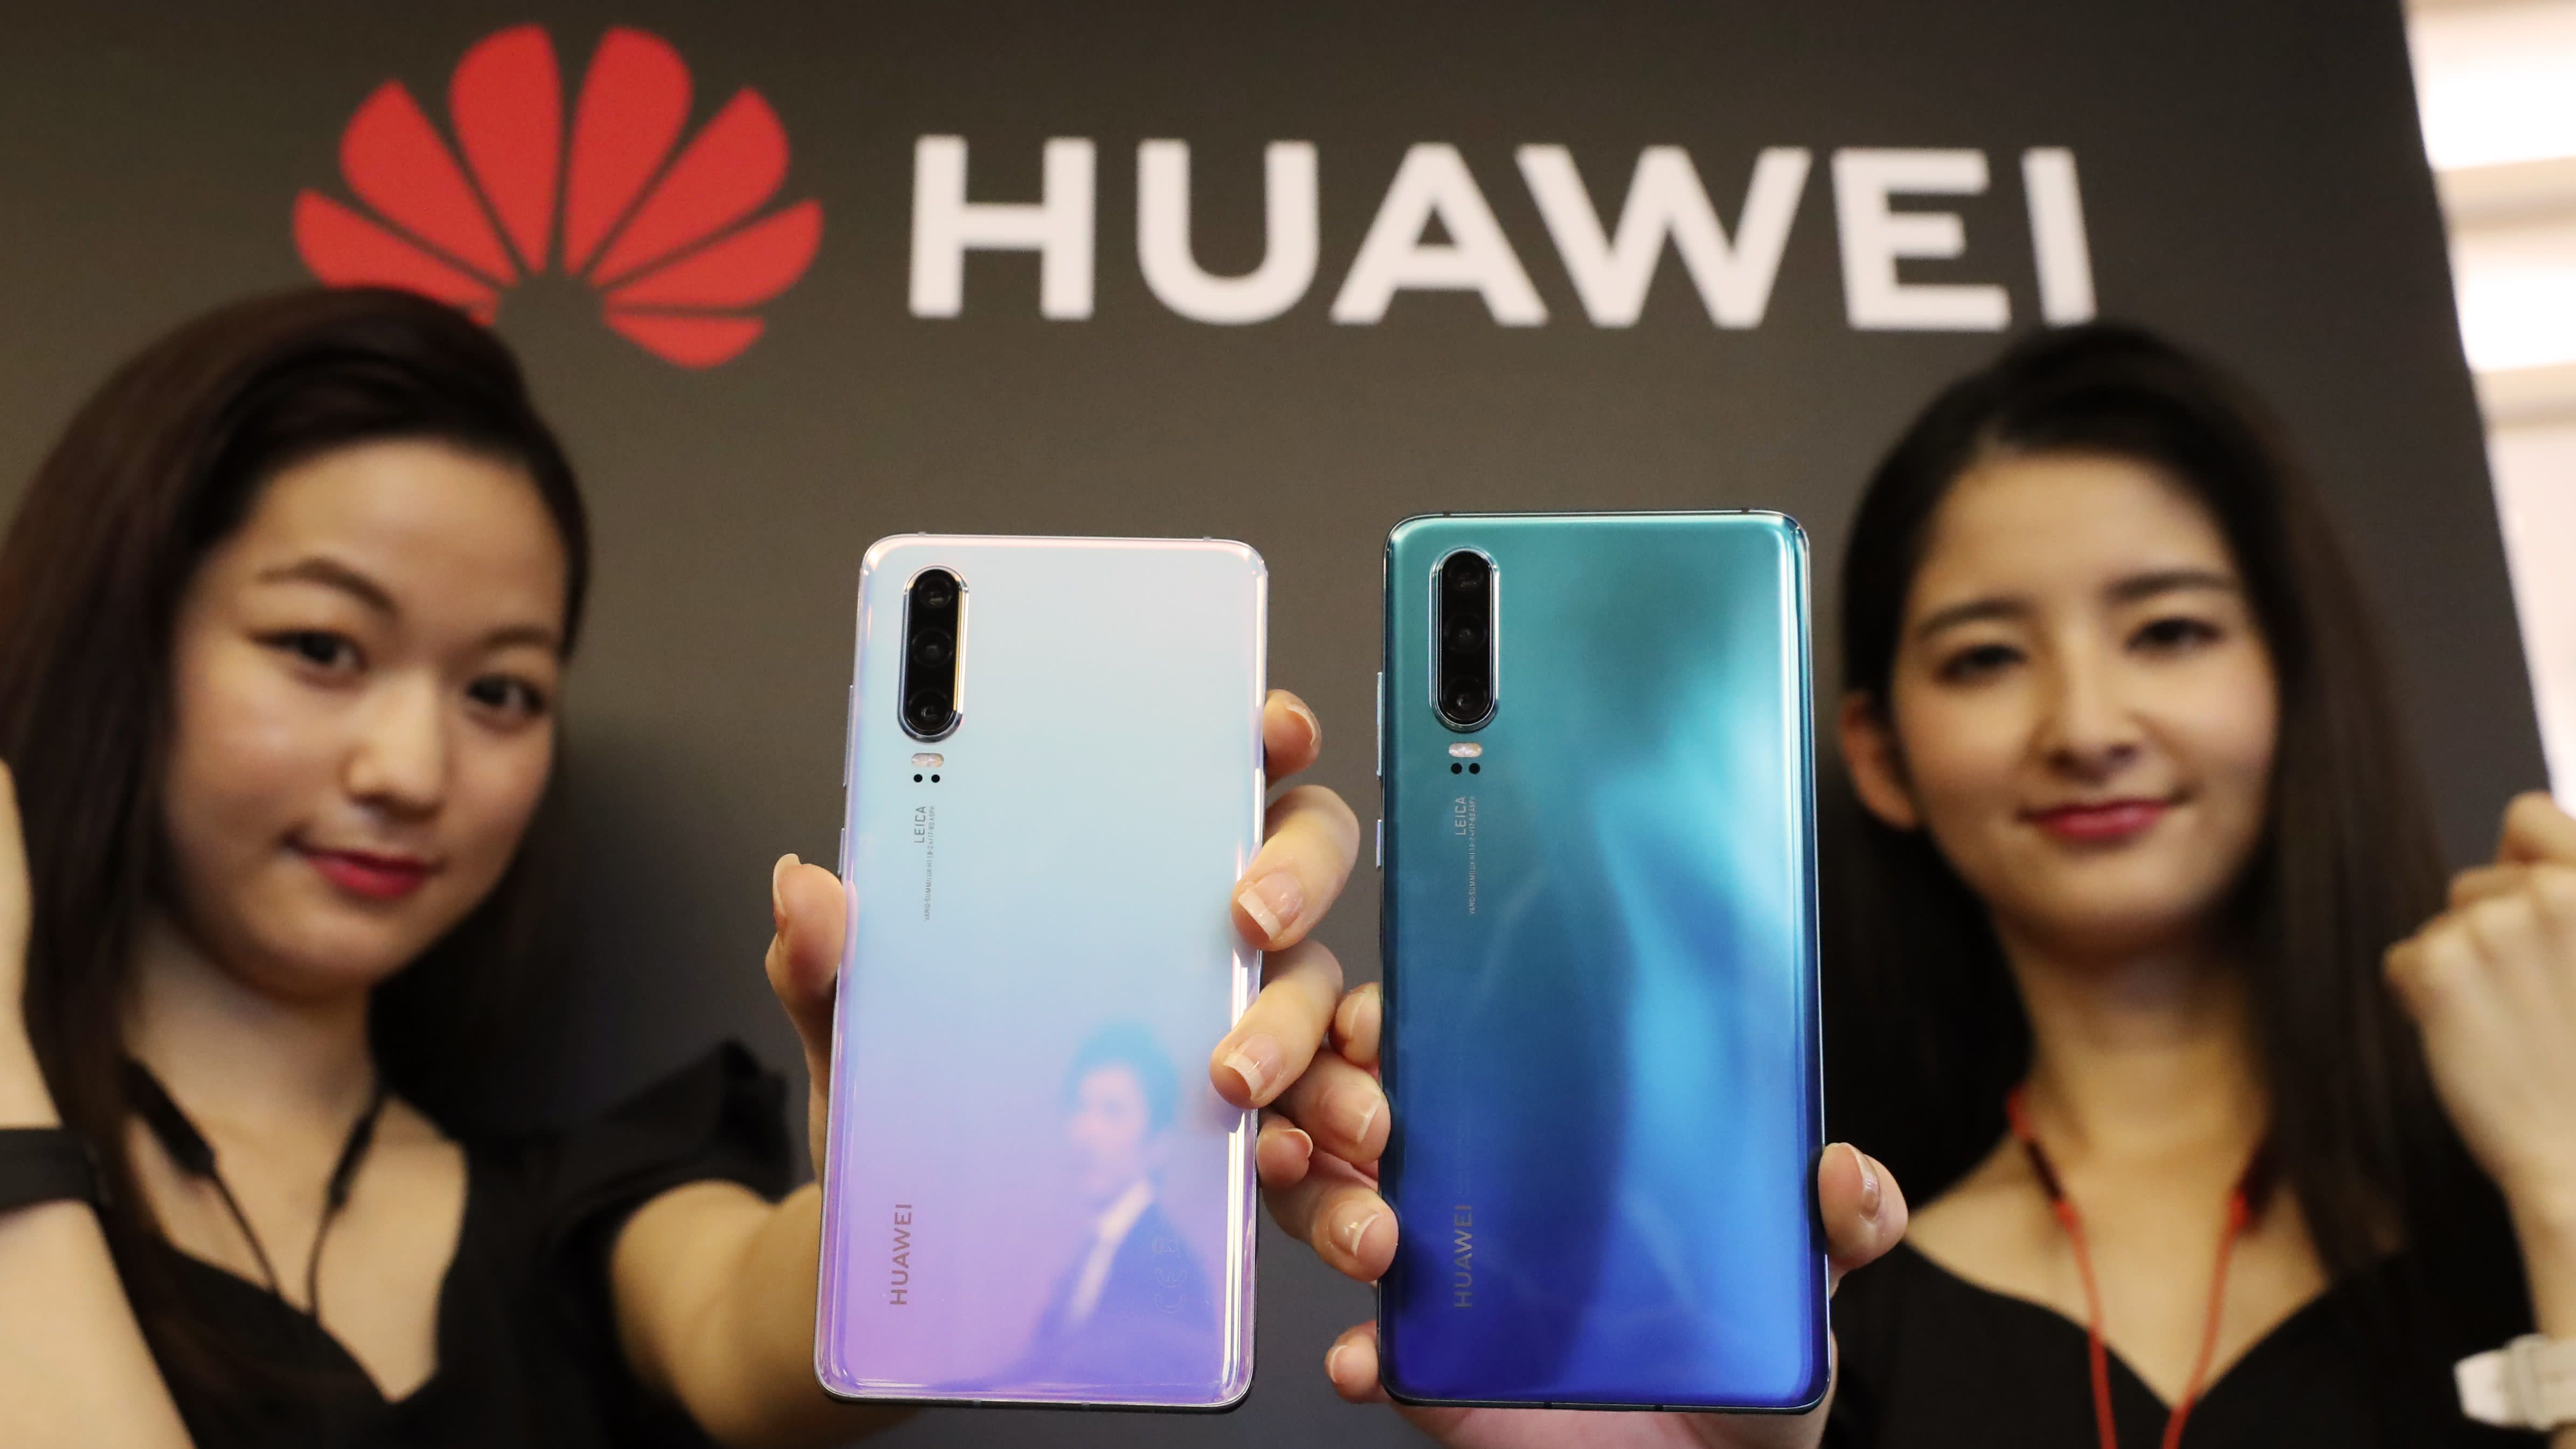 พิษแบล็กลิสต์เริ่มกระทบยอดขายมือถือ Huawei หลังหลายประเทศเลื่อนการวางจำหน่ายสินค้า เนื่องจากยังไม่มั่นใจสถานการณ์